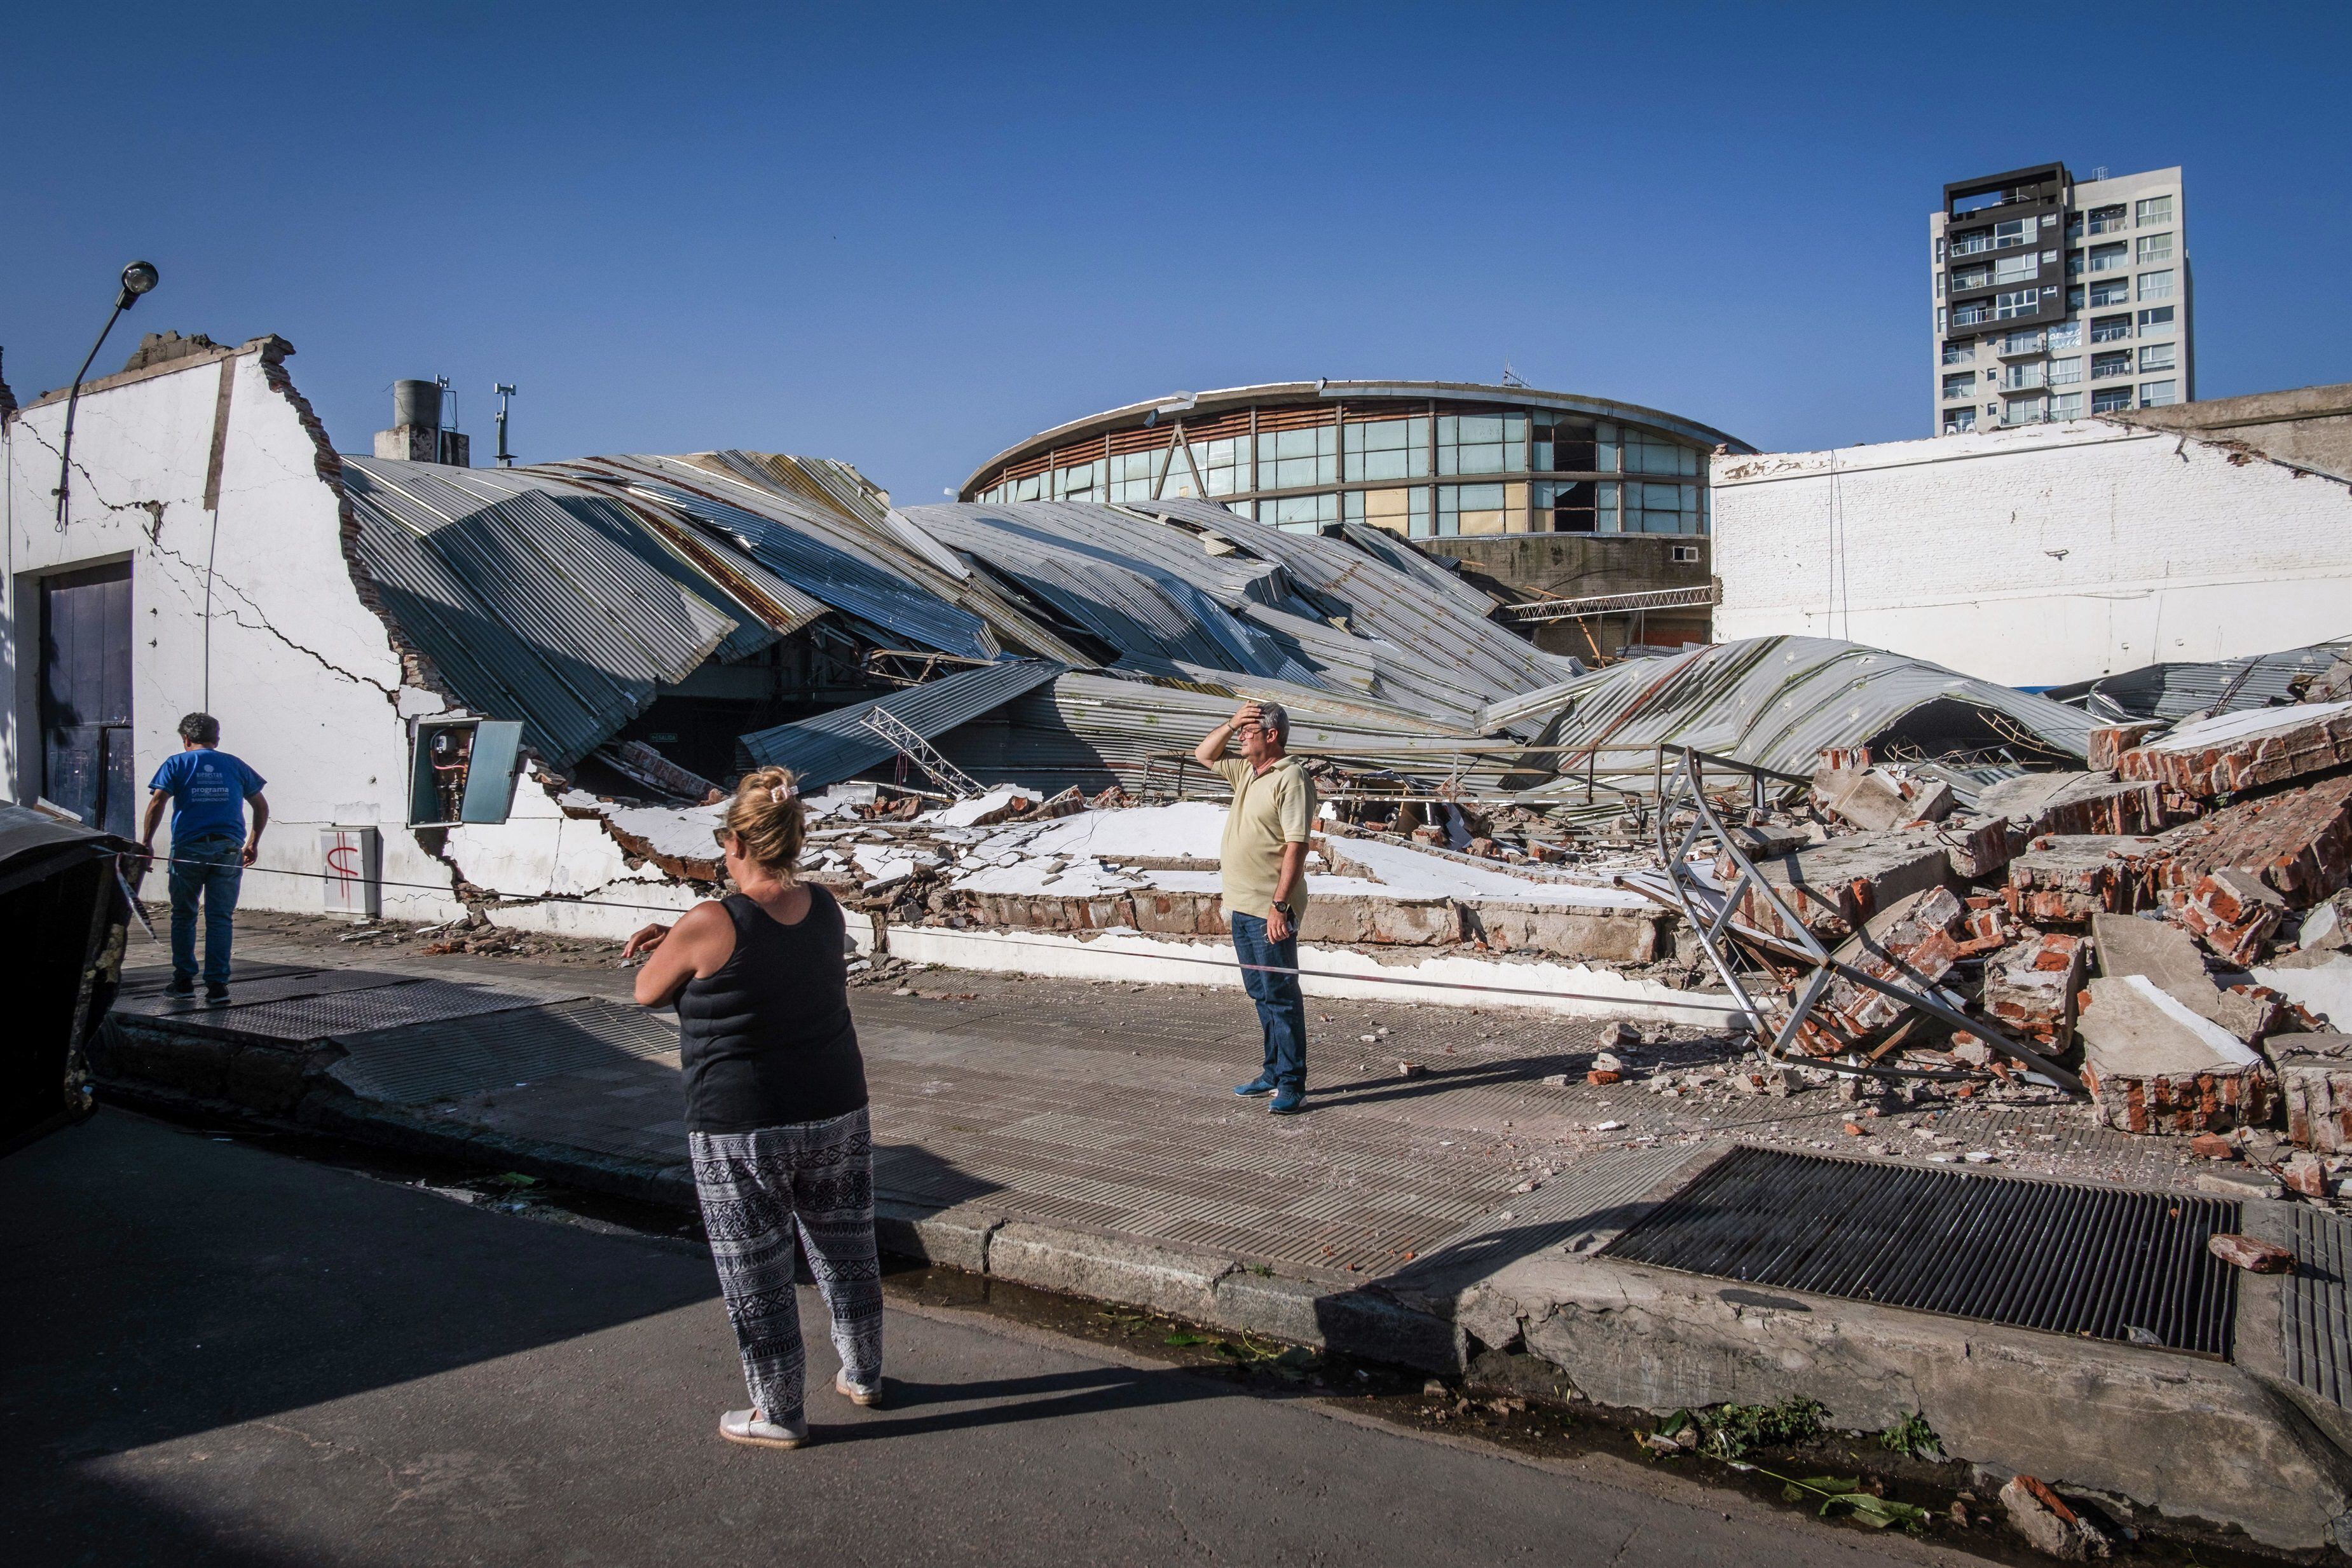 Instalación destruida por una tormenta en la ciudad de Bahía Blanca, Buenos Aires (Télam)